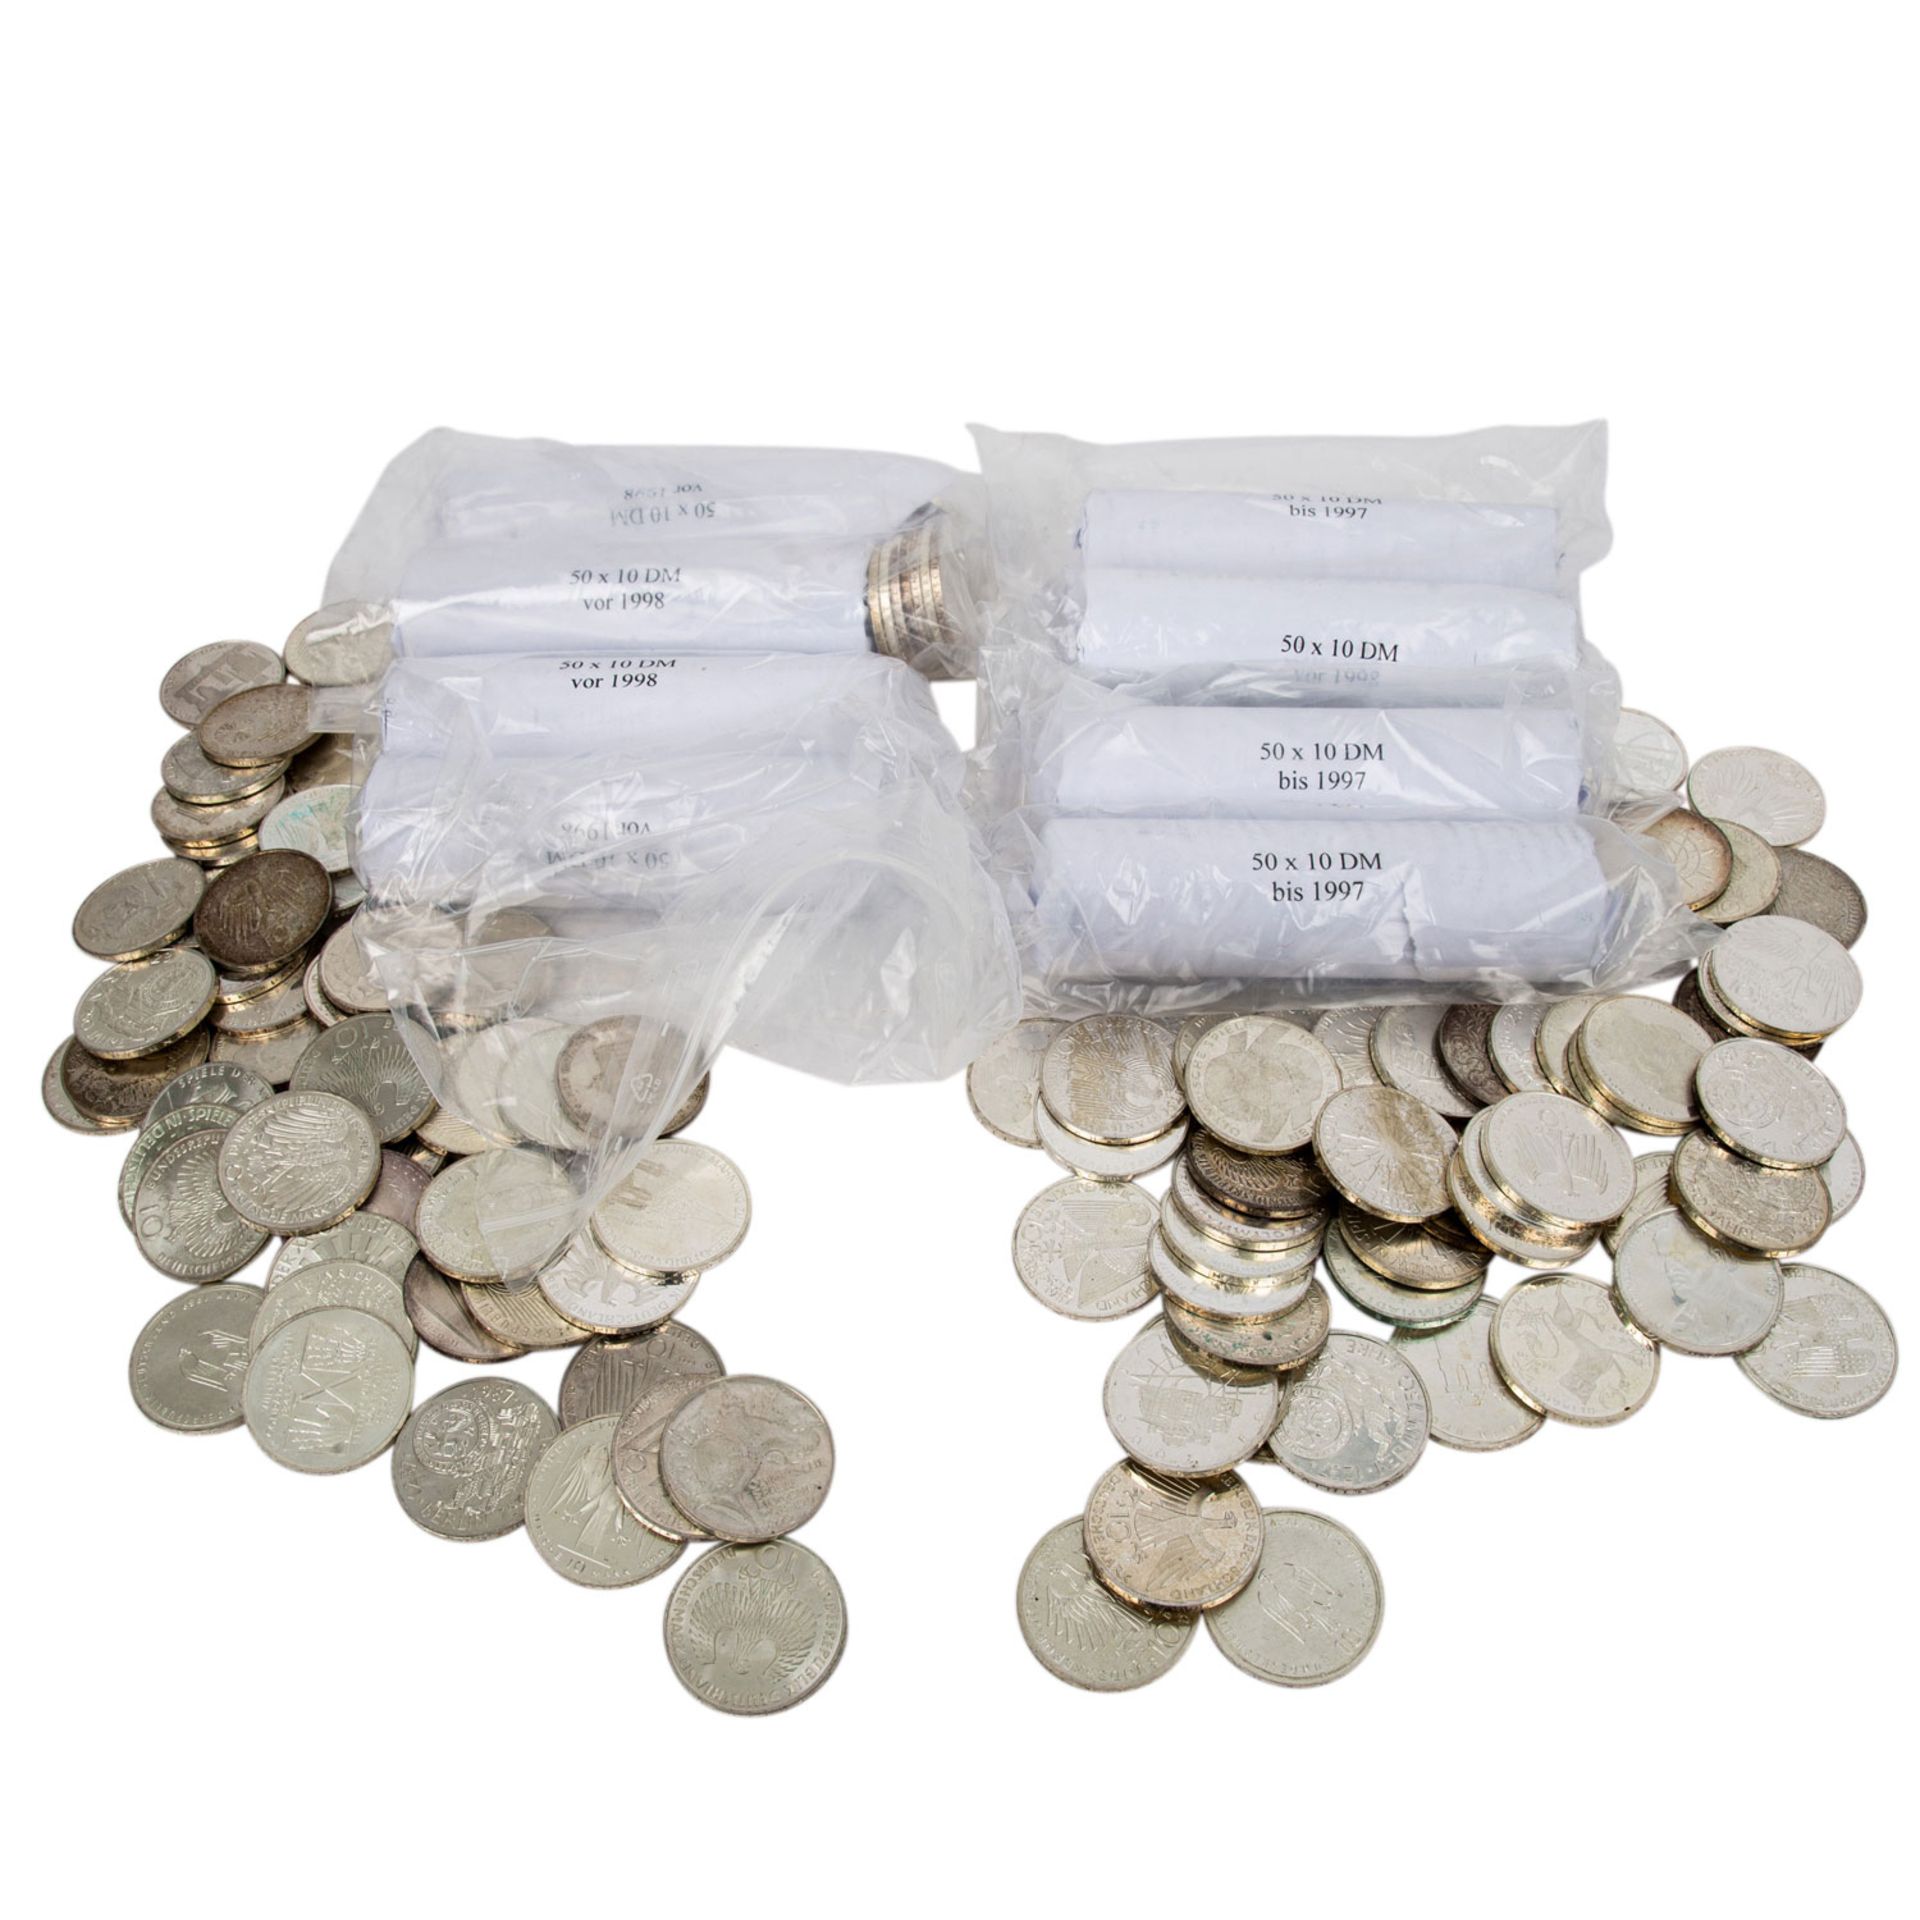 BRD Silbermünzen 500 x 10 DM,insgesamt Silber Feingewicht ca. 4,8kg verschiedene Jahr